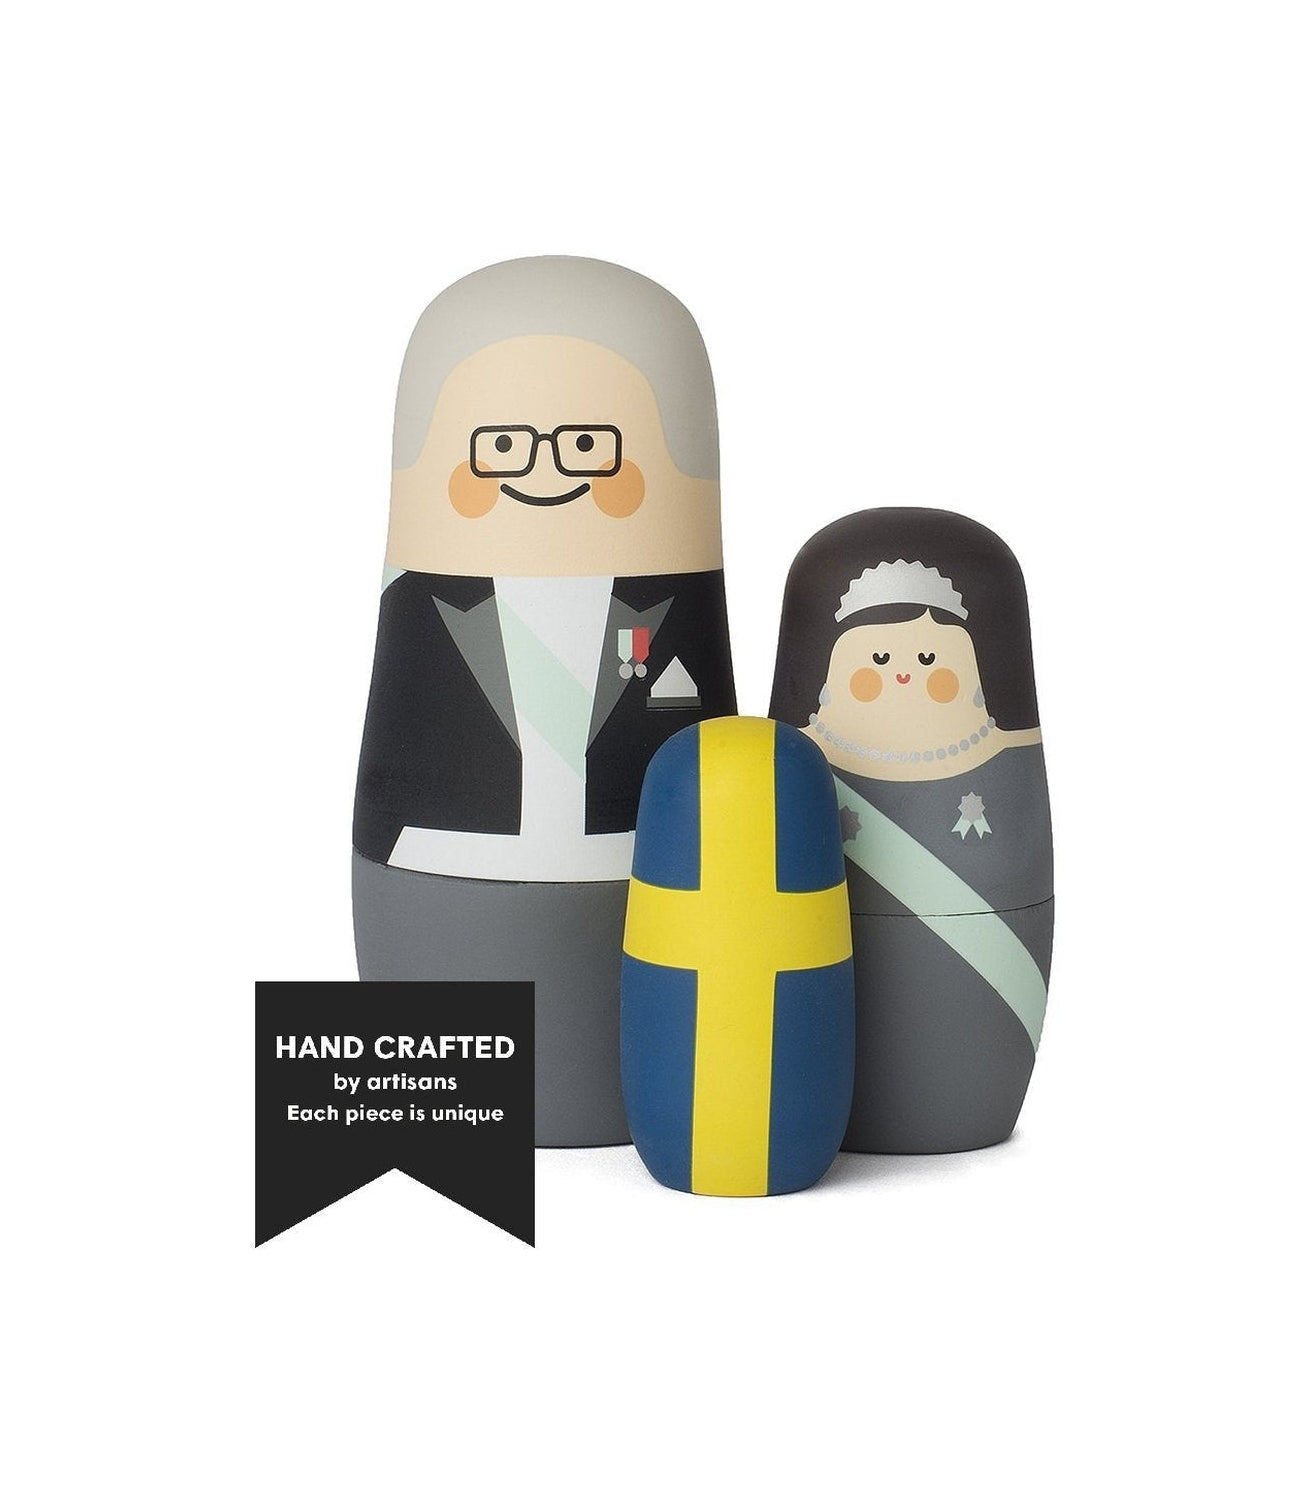 Spring Köpenhamns uttryck svenska royalties Matryoshka Dolls